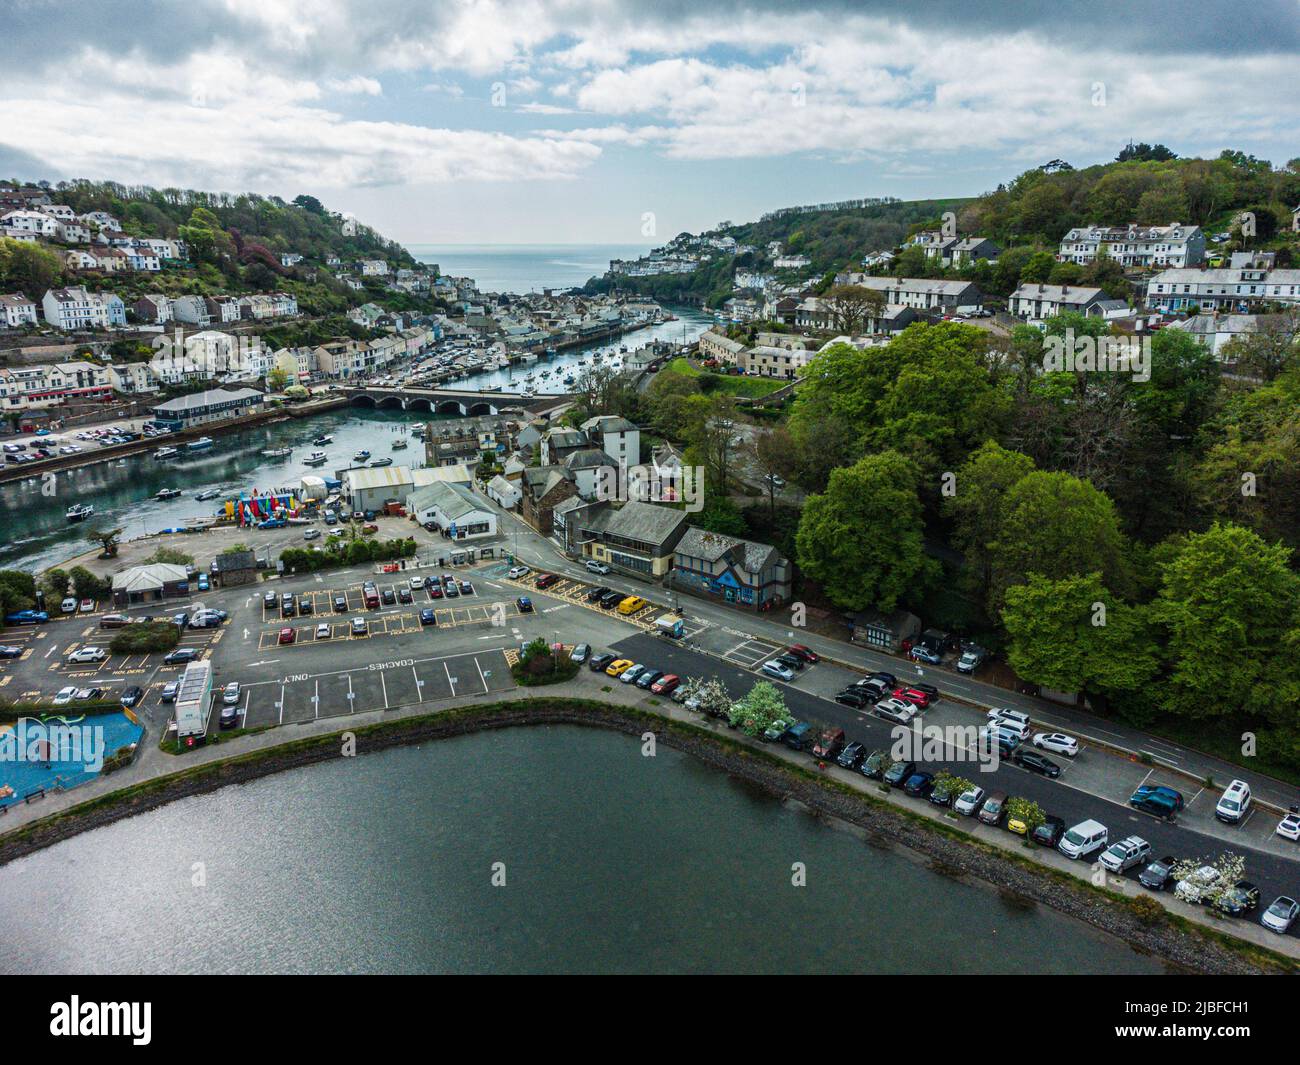 Vue aérienne sur Looe, ville de pêche de Cornish et destination de vacances populaire, Cornwall, Angleterre, Royaume-Uni Banque D'Images